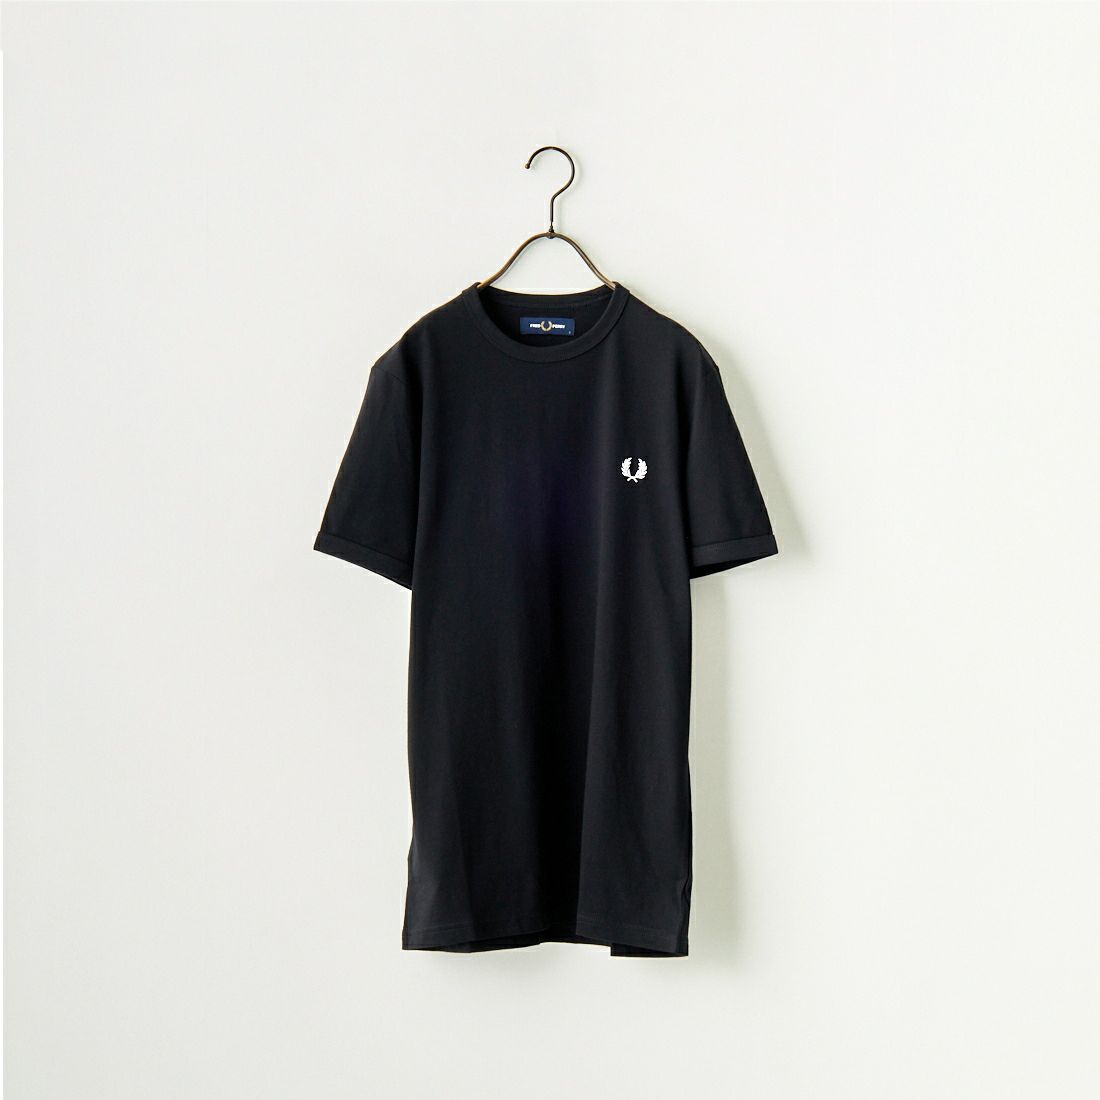 FRED PERRY [フレッドペリー] リンガーTシャツ [M3519] 102 BLACK